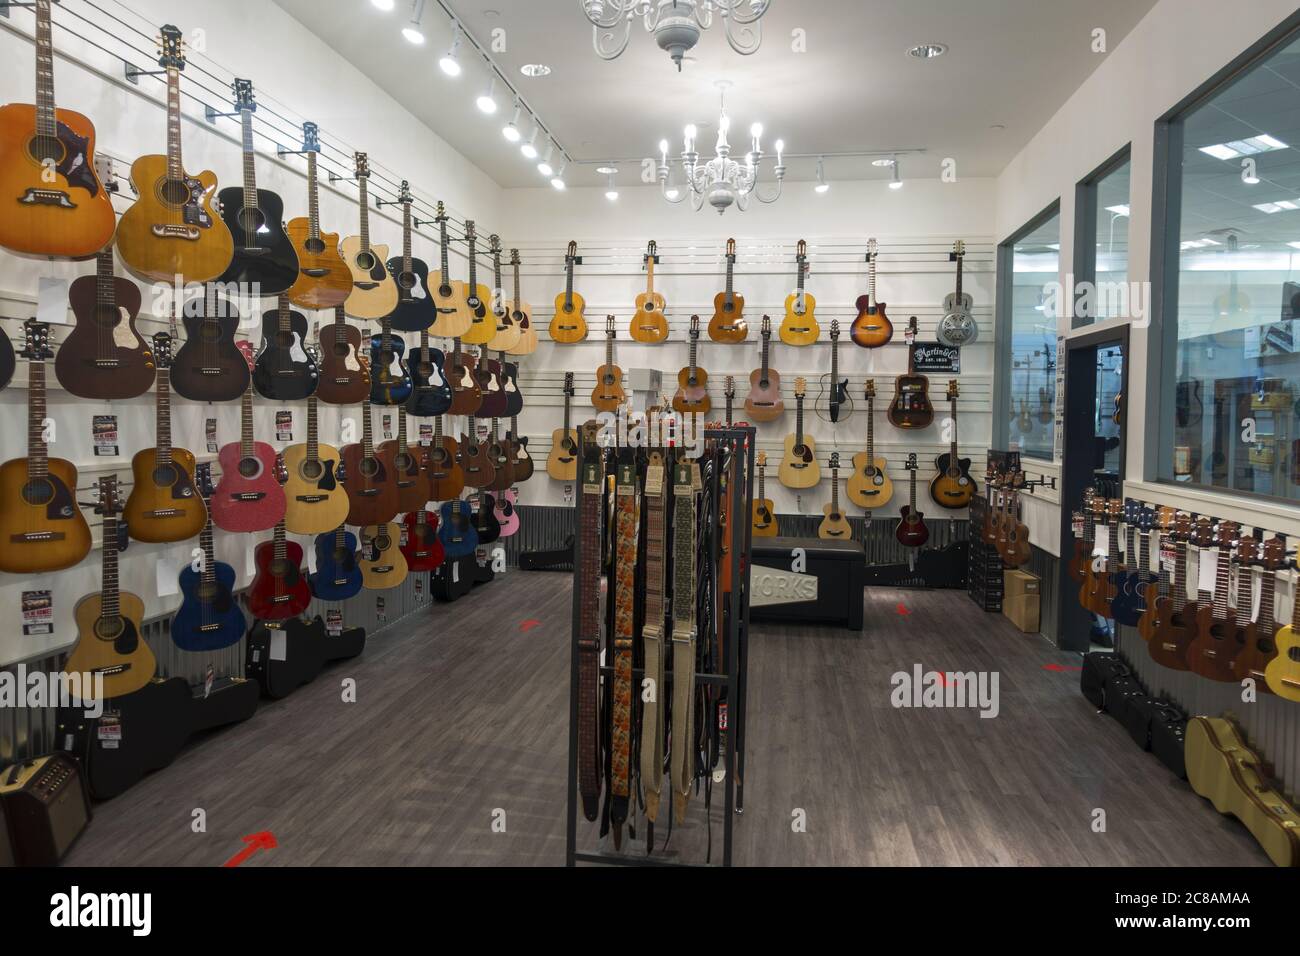 Instruments de musique acoustique et électrique sur présentation dans l'intérieur de la boutique de guitare. Calgary, Alberta Market Mall Shopping Centre Banque D'Images